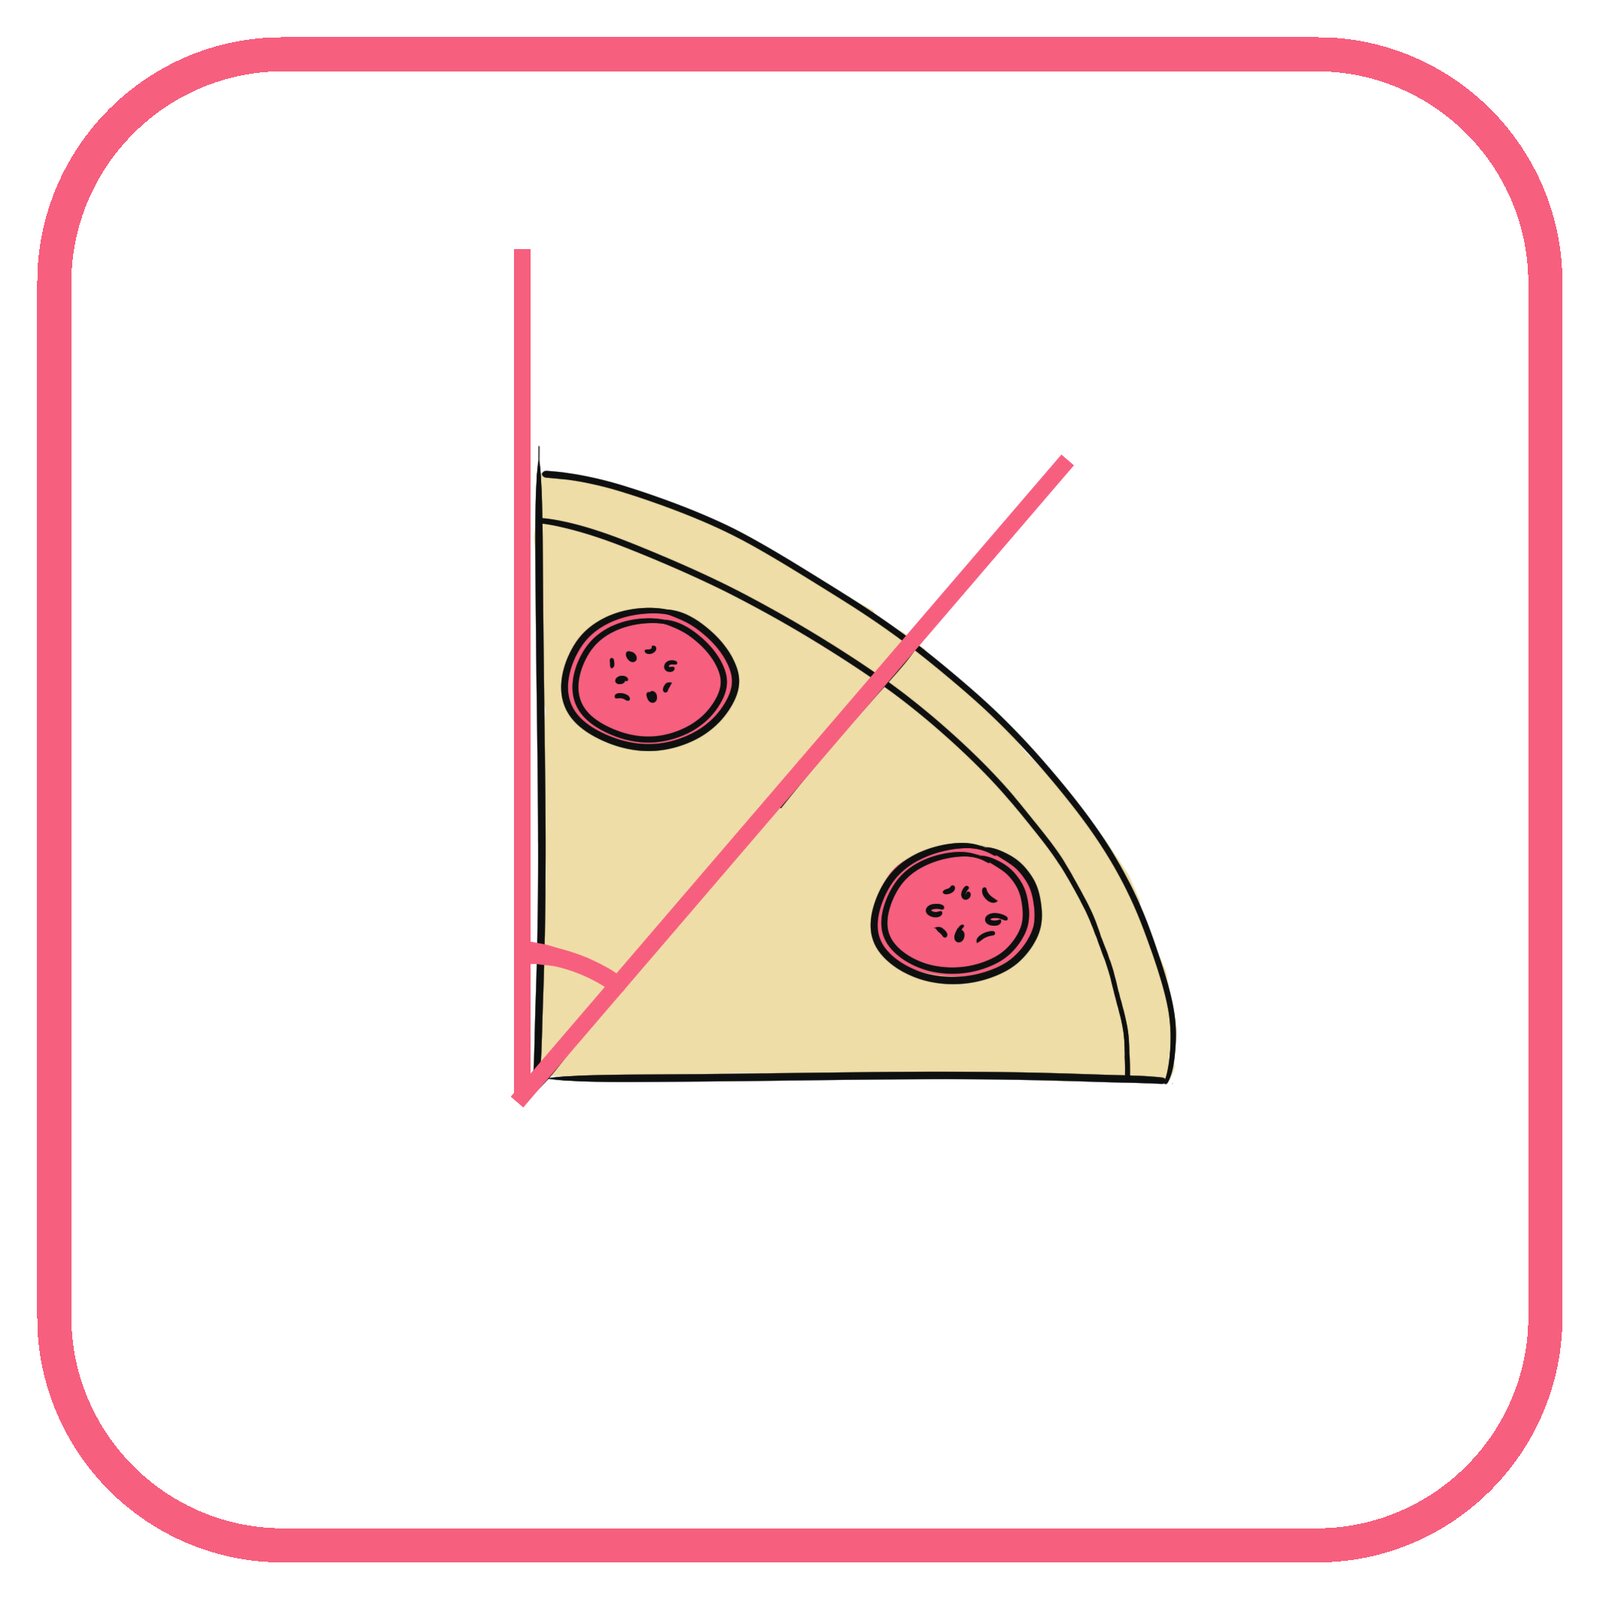 Rysunek kąta ostrego na kawałku pizzy z salami.